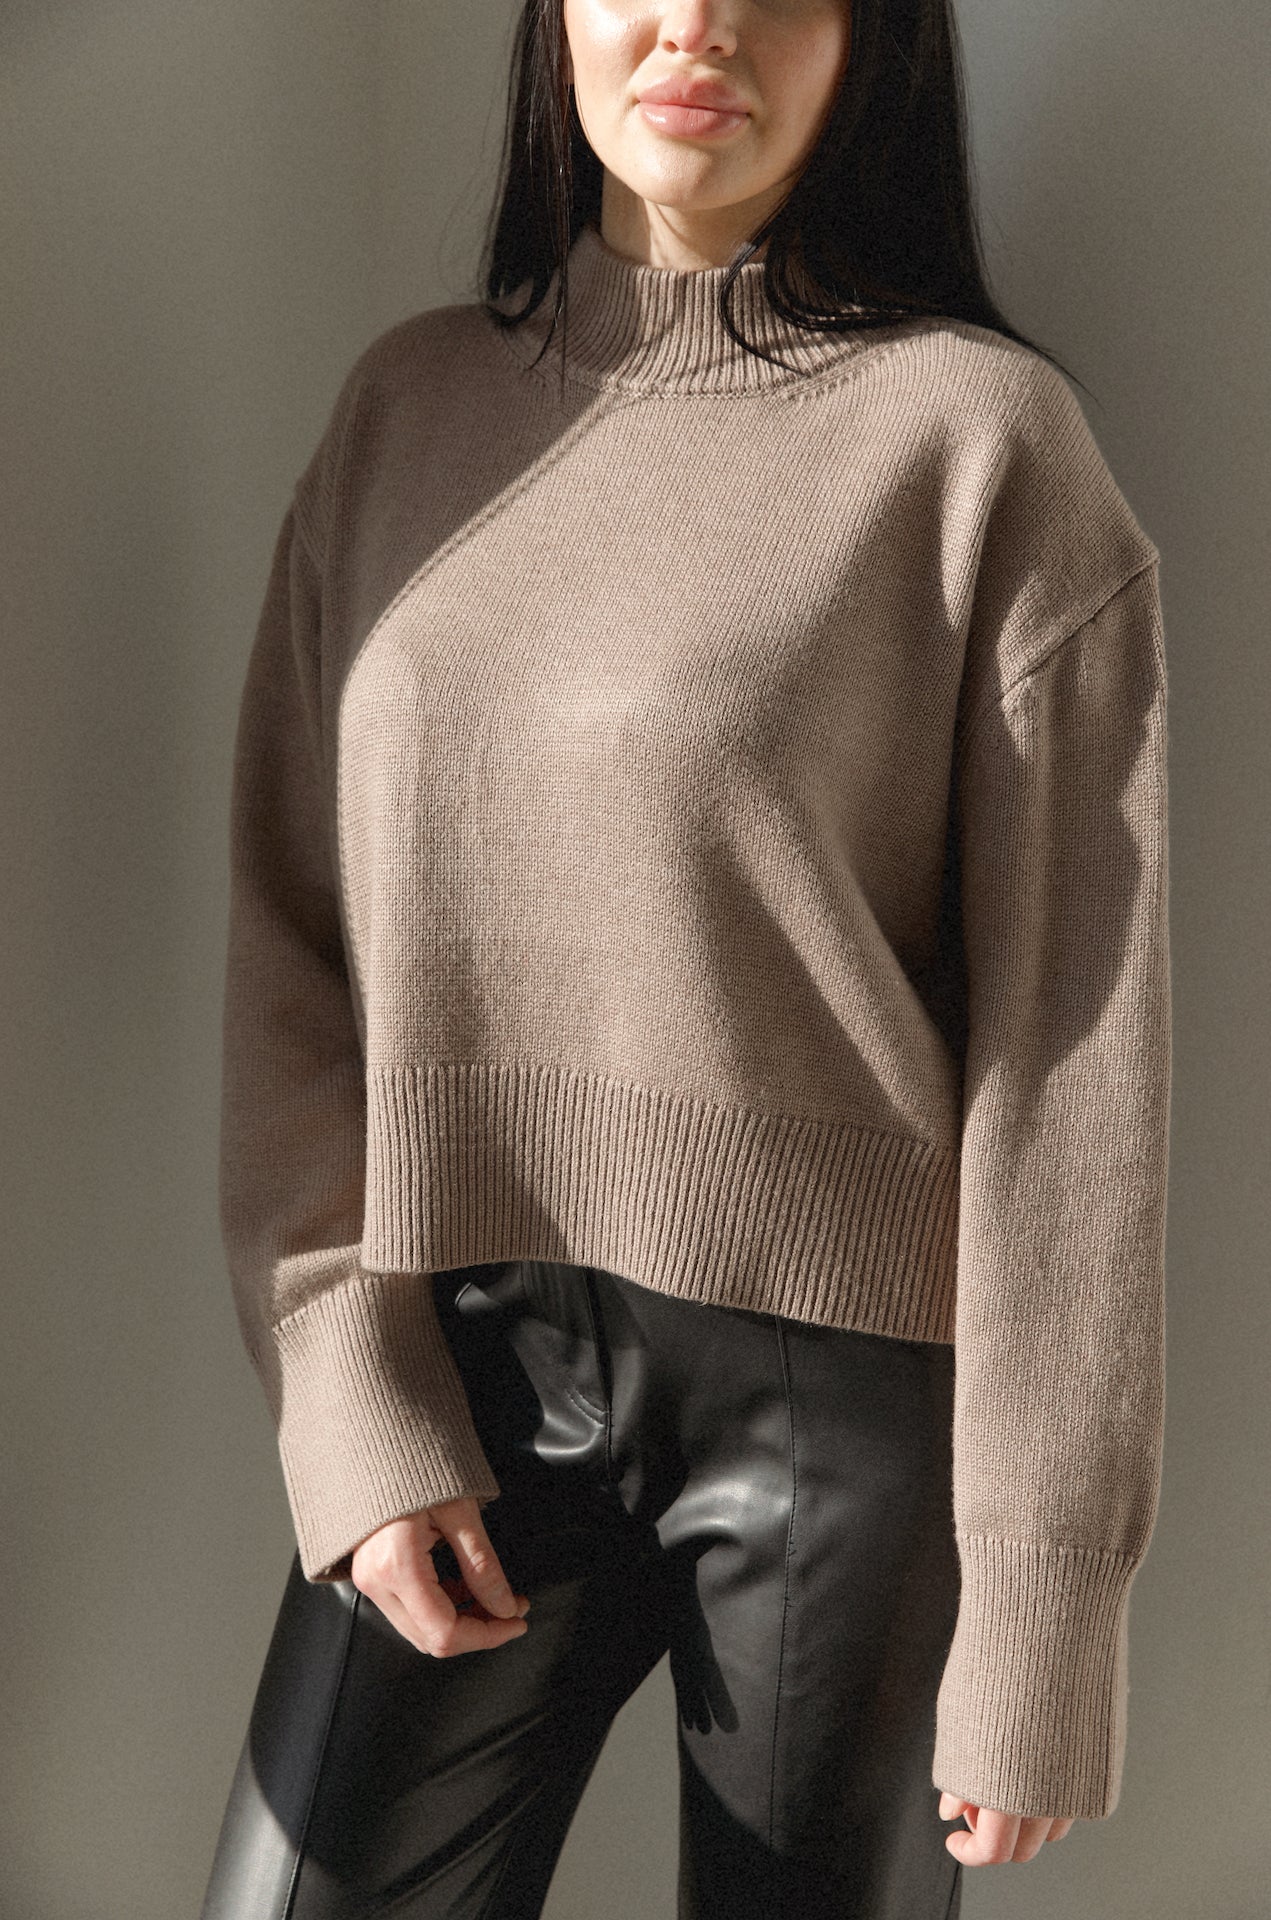 mocha brown knit sweater